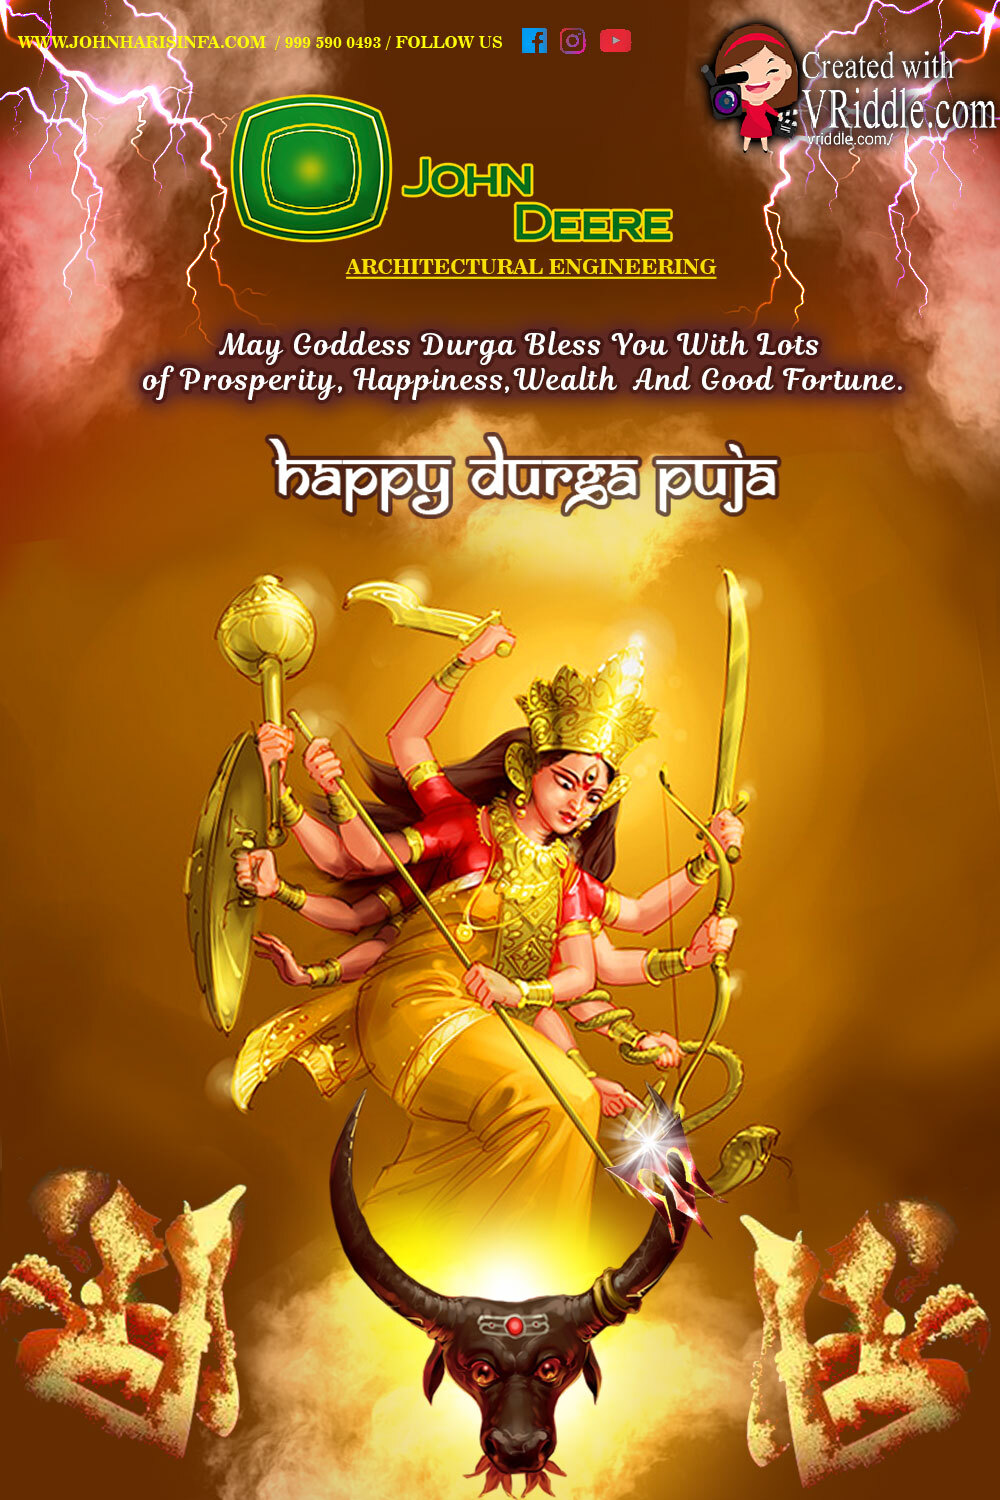 Golden Durga Dussehra Greeting Card